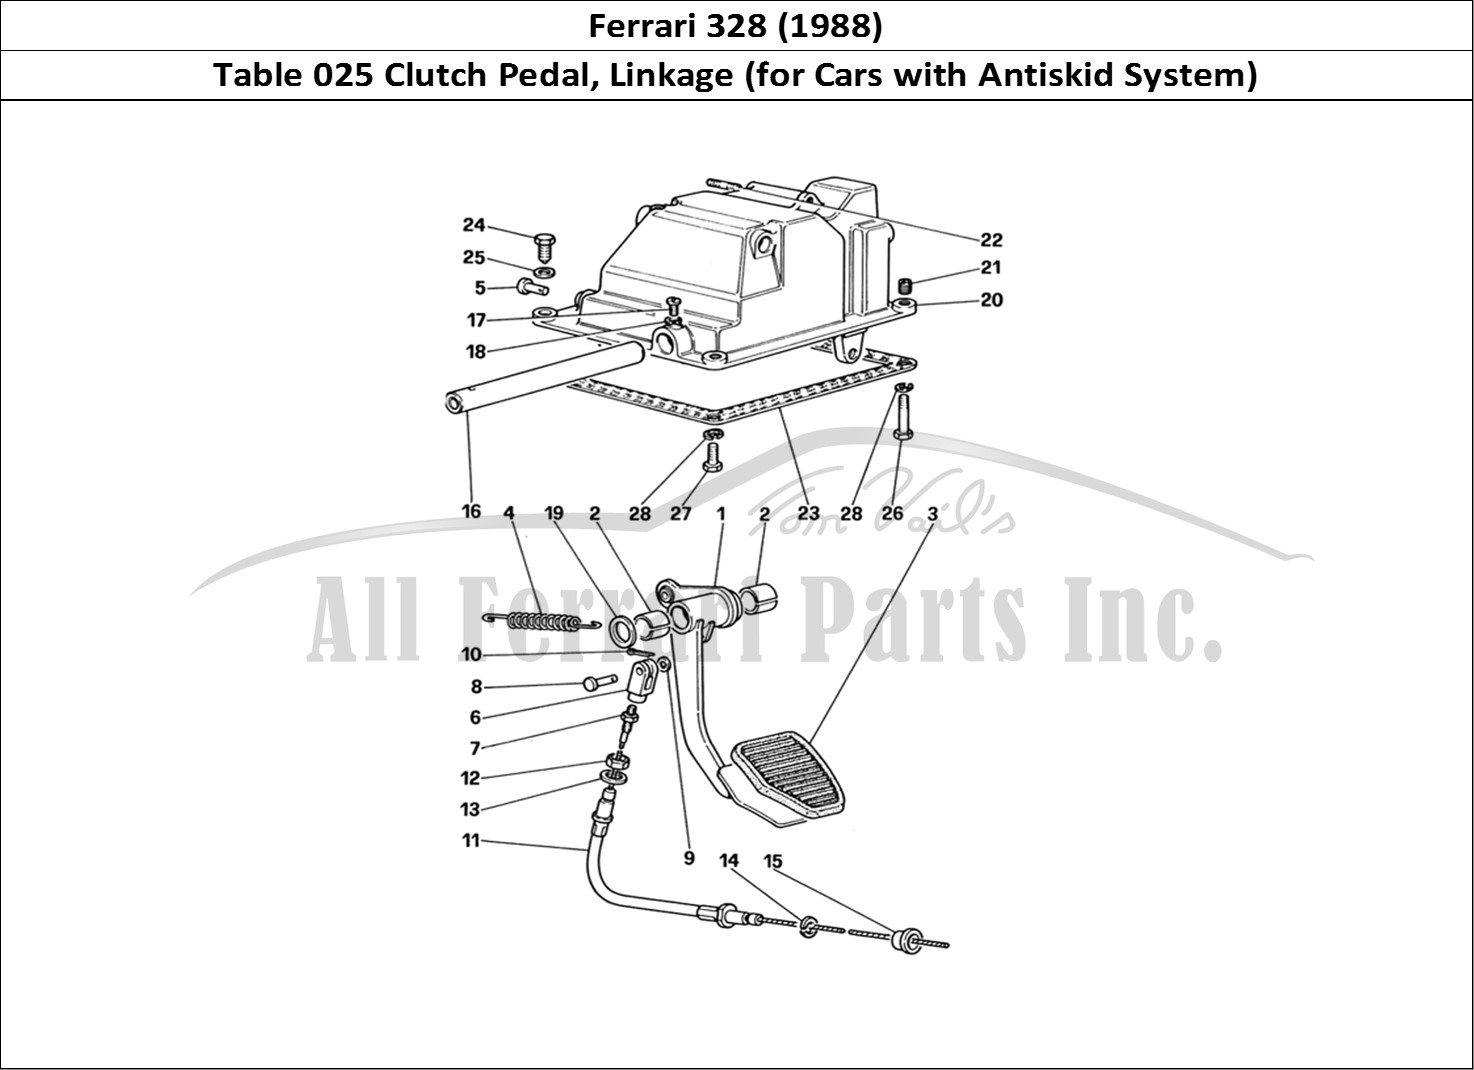 Ferrari Parts Ferrari 328 (1988) Page 025 Clutch Release Control (f